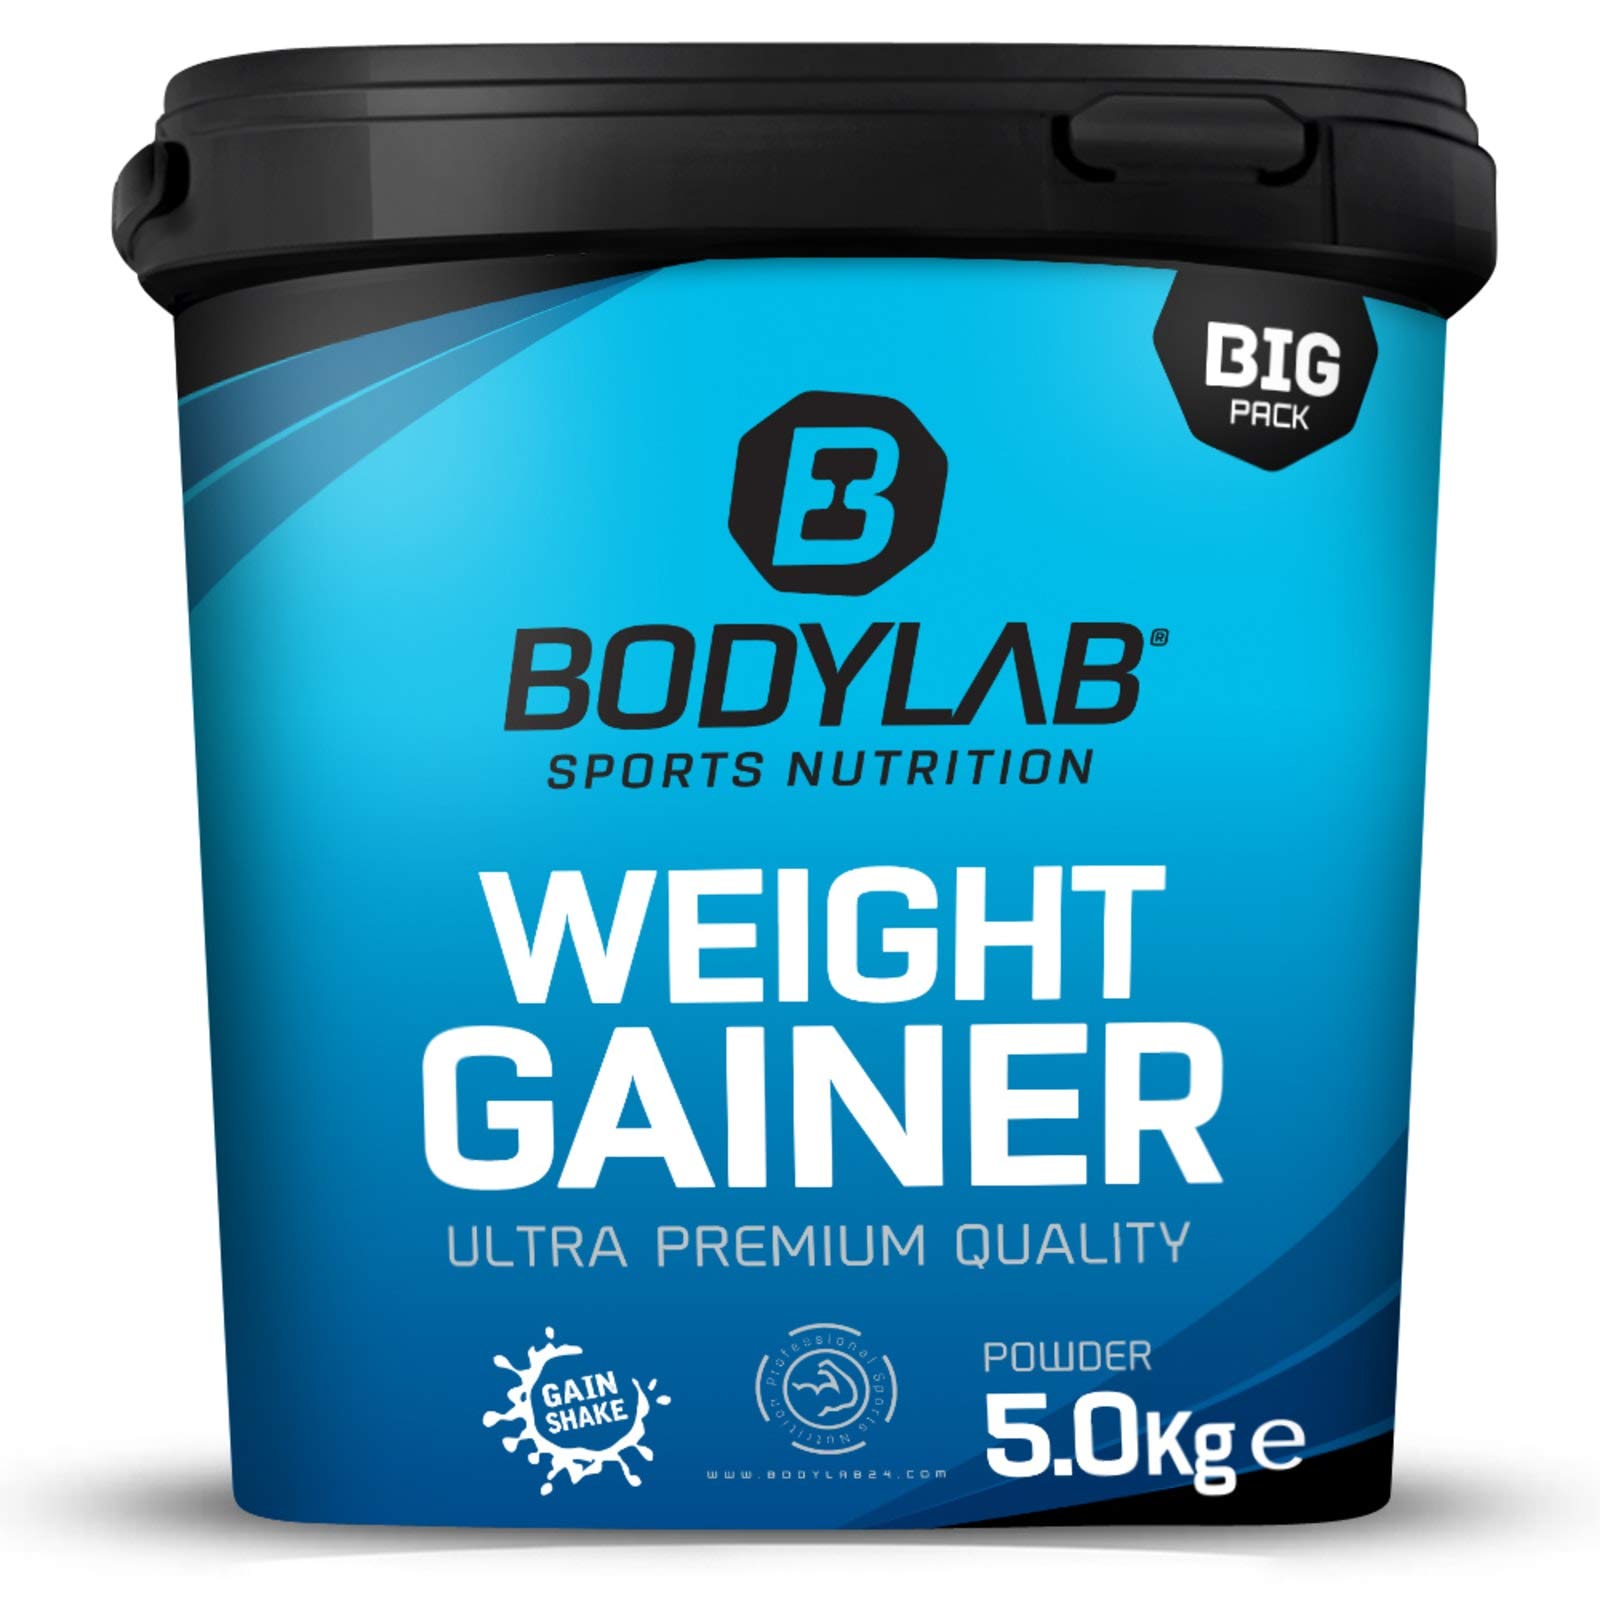 Bodylab24 Weight Gainer Vanille 5kg, der ideale Shake für die nächste Massephase, mit Kohlenhydraten, Ballaststoffen und mehr als 20% Eiweiß je Portion, angereichert mit Kreatin